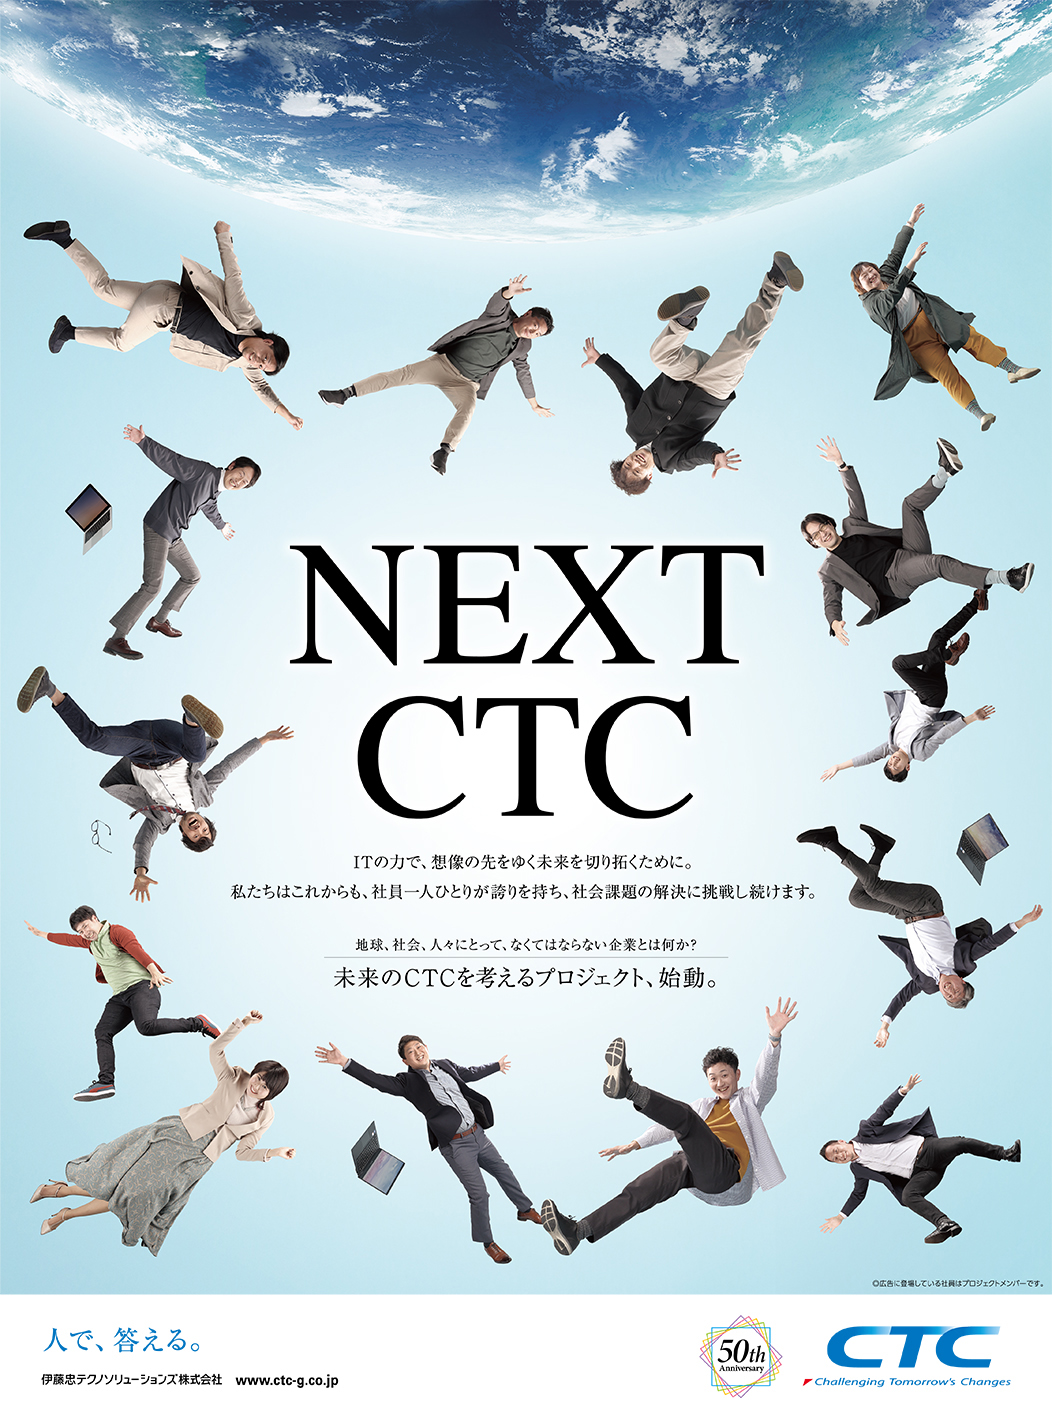 「NEXT CTC」デザインの画像